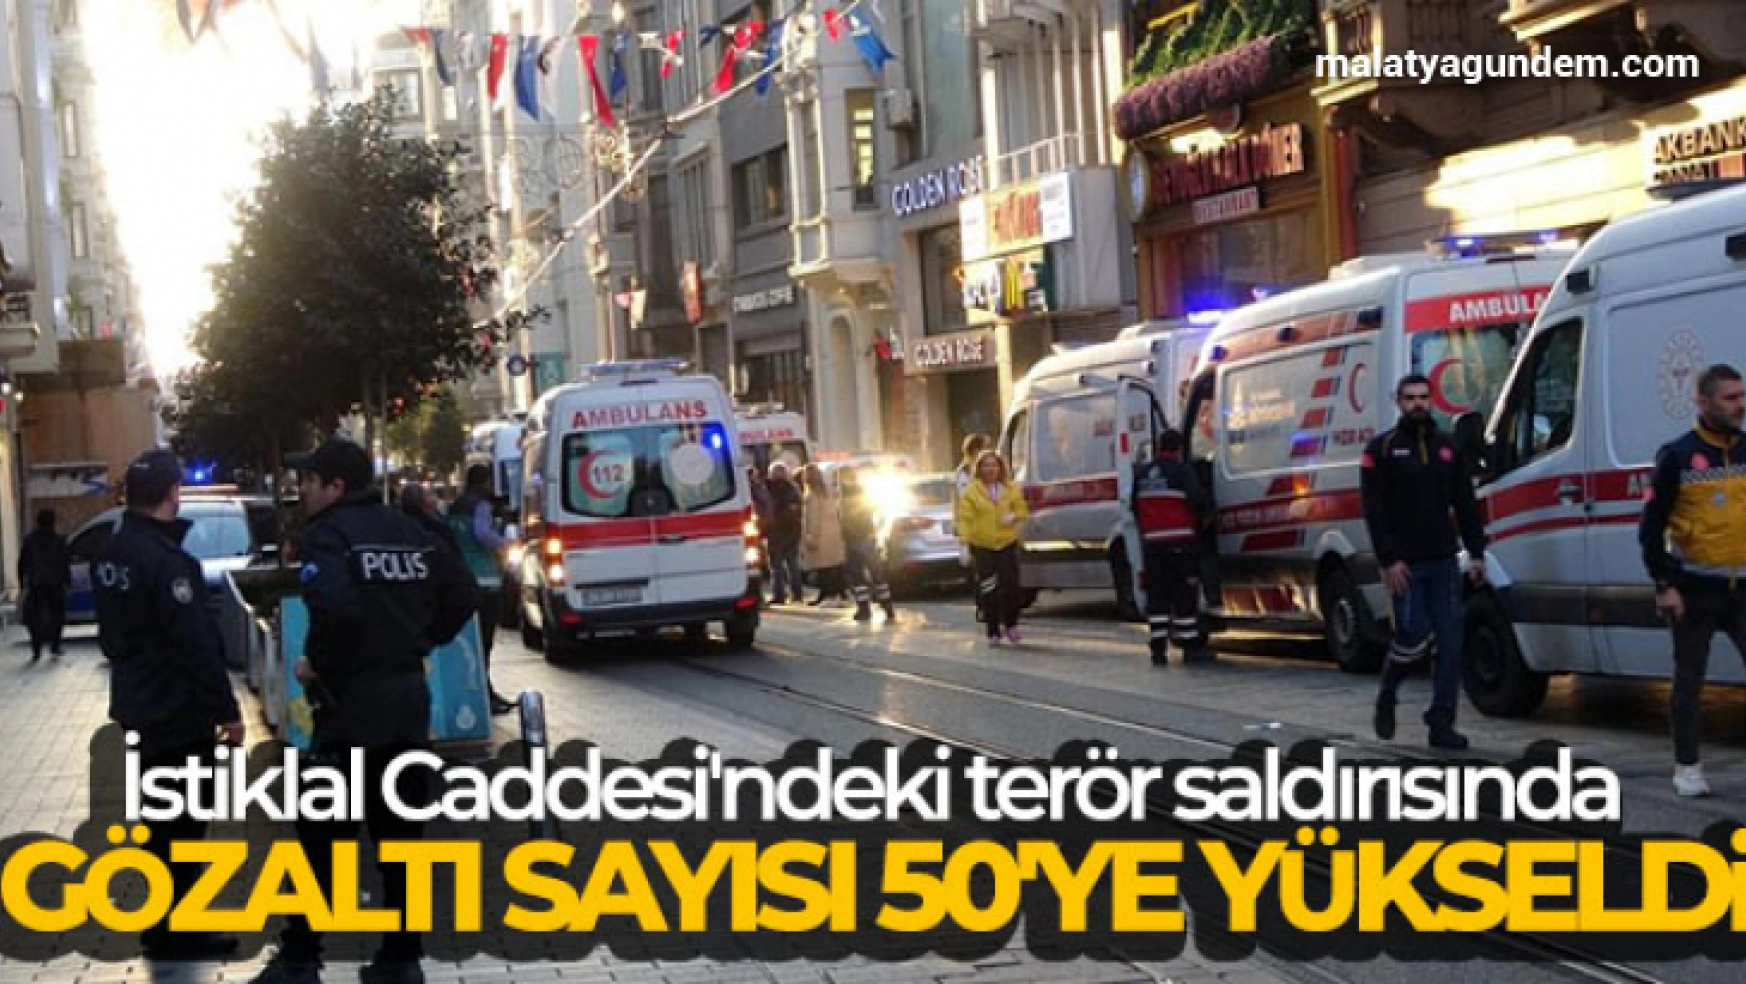 İstiklal Caddesi'ndeki terör saldırısında gözaltı sayısı 50'ye yükseldi